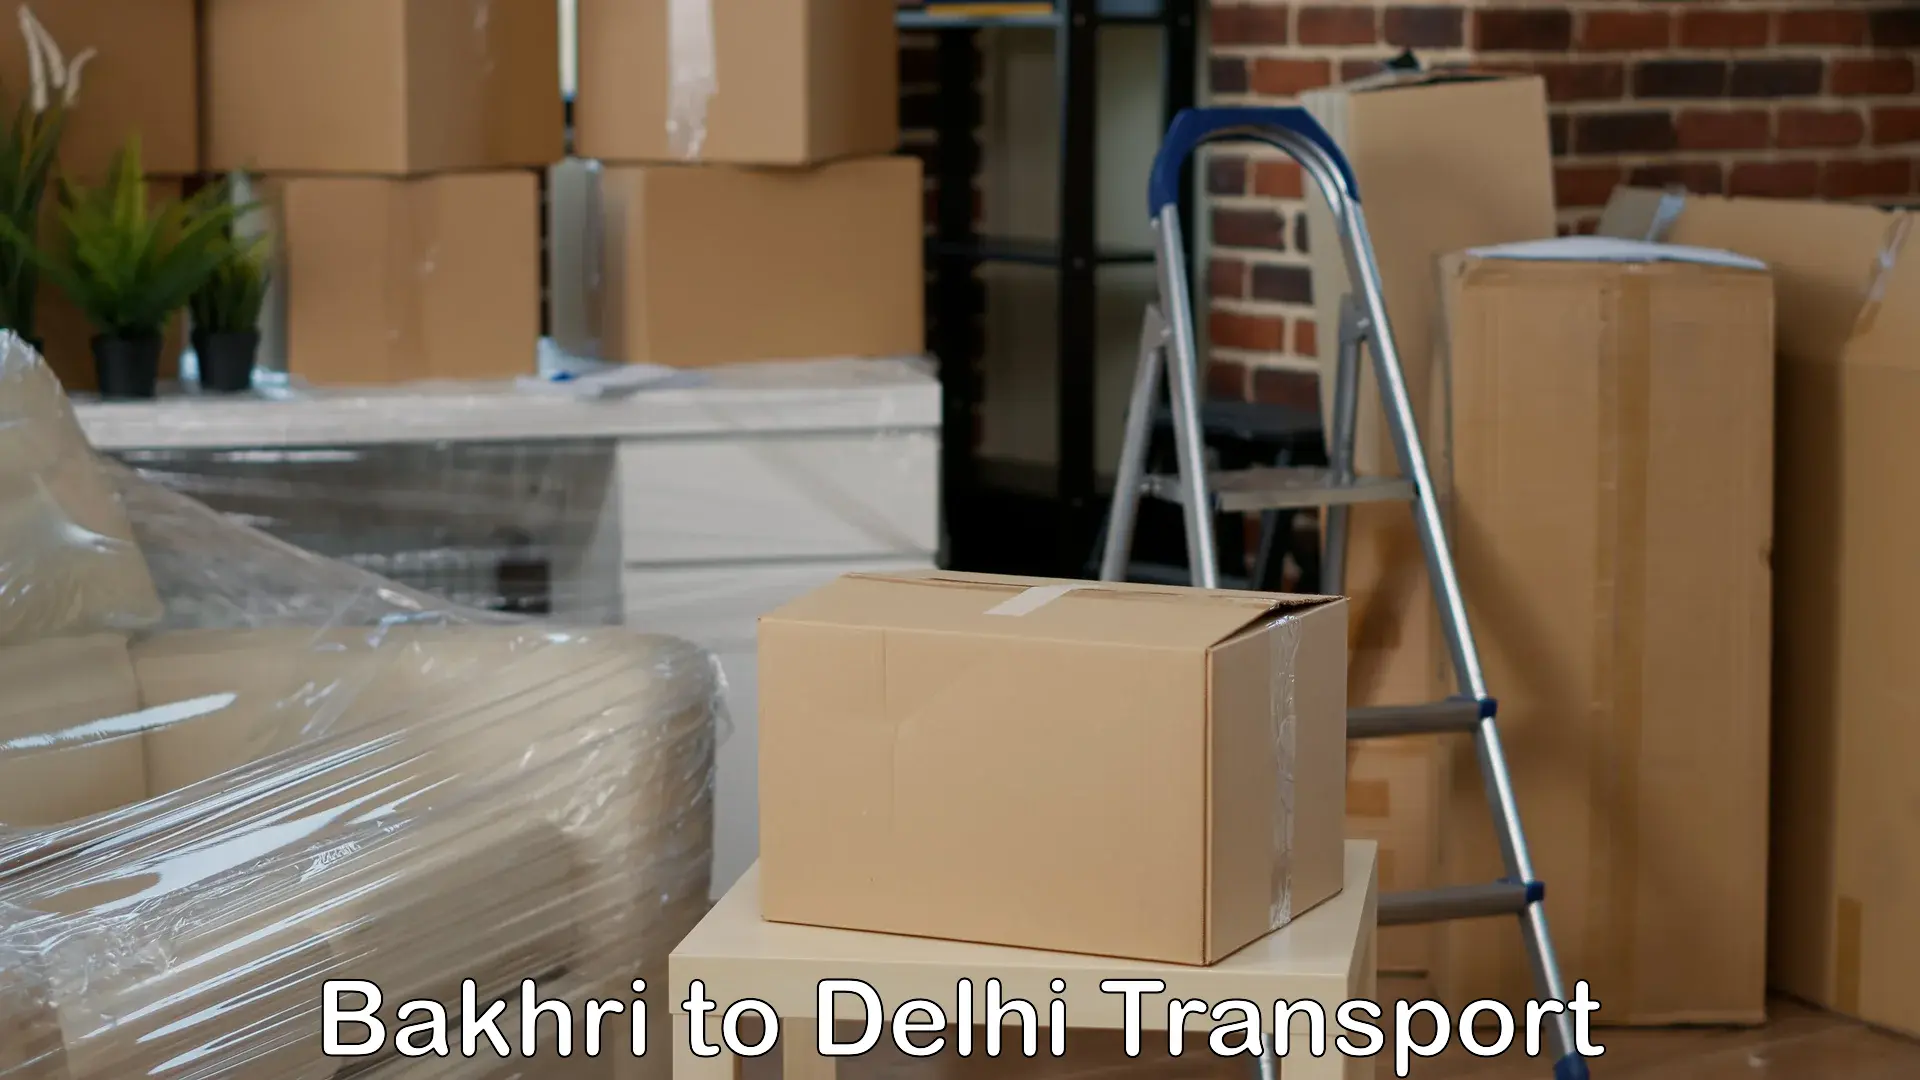 Transport shared services Bakhri to Delhi Technological University DTU